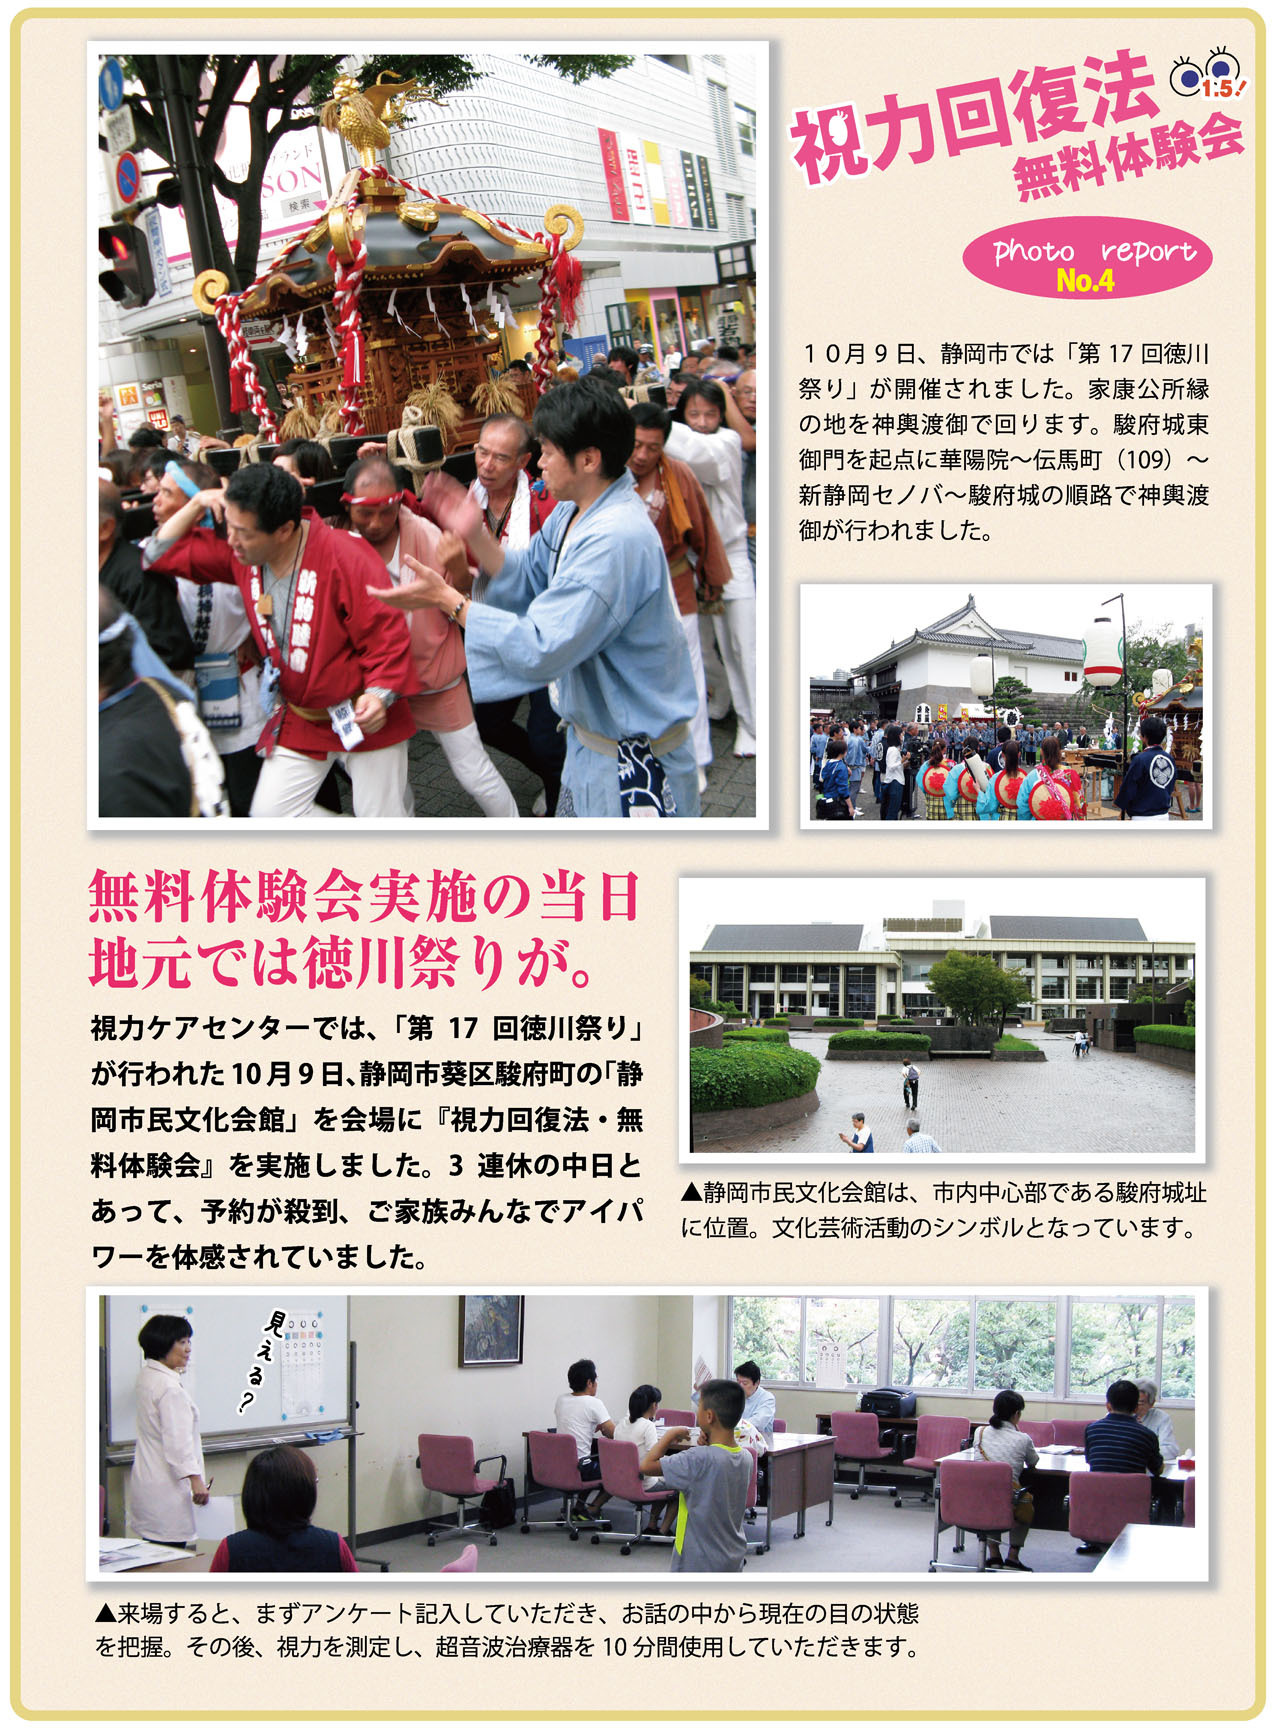 静岡市民文化会館で視力回復法・無料体験会開催